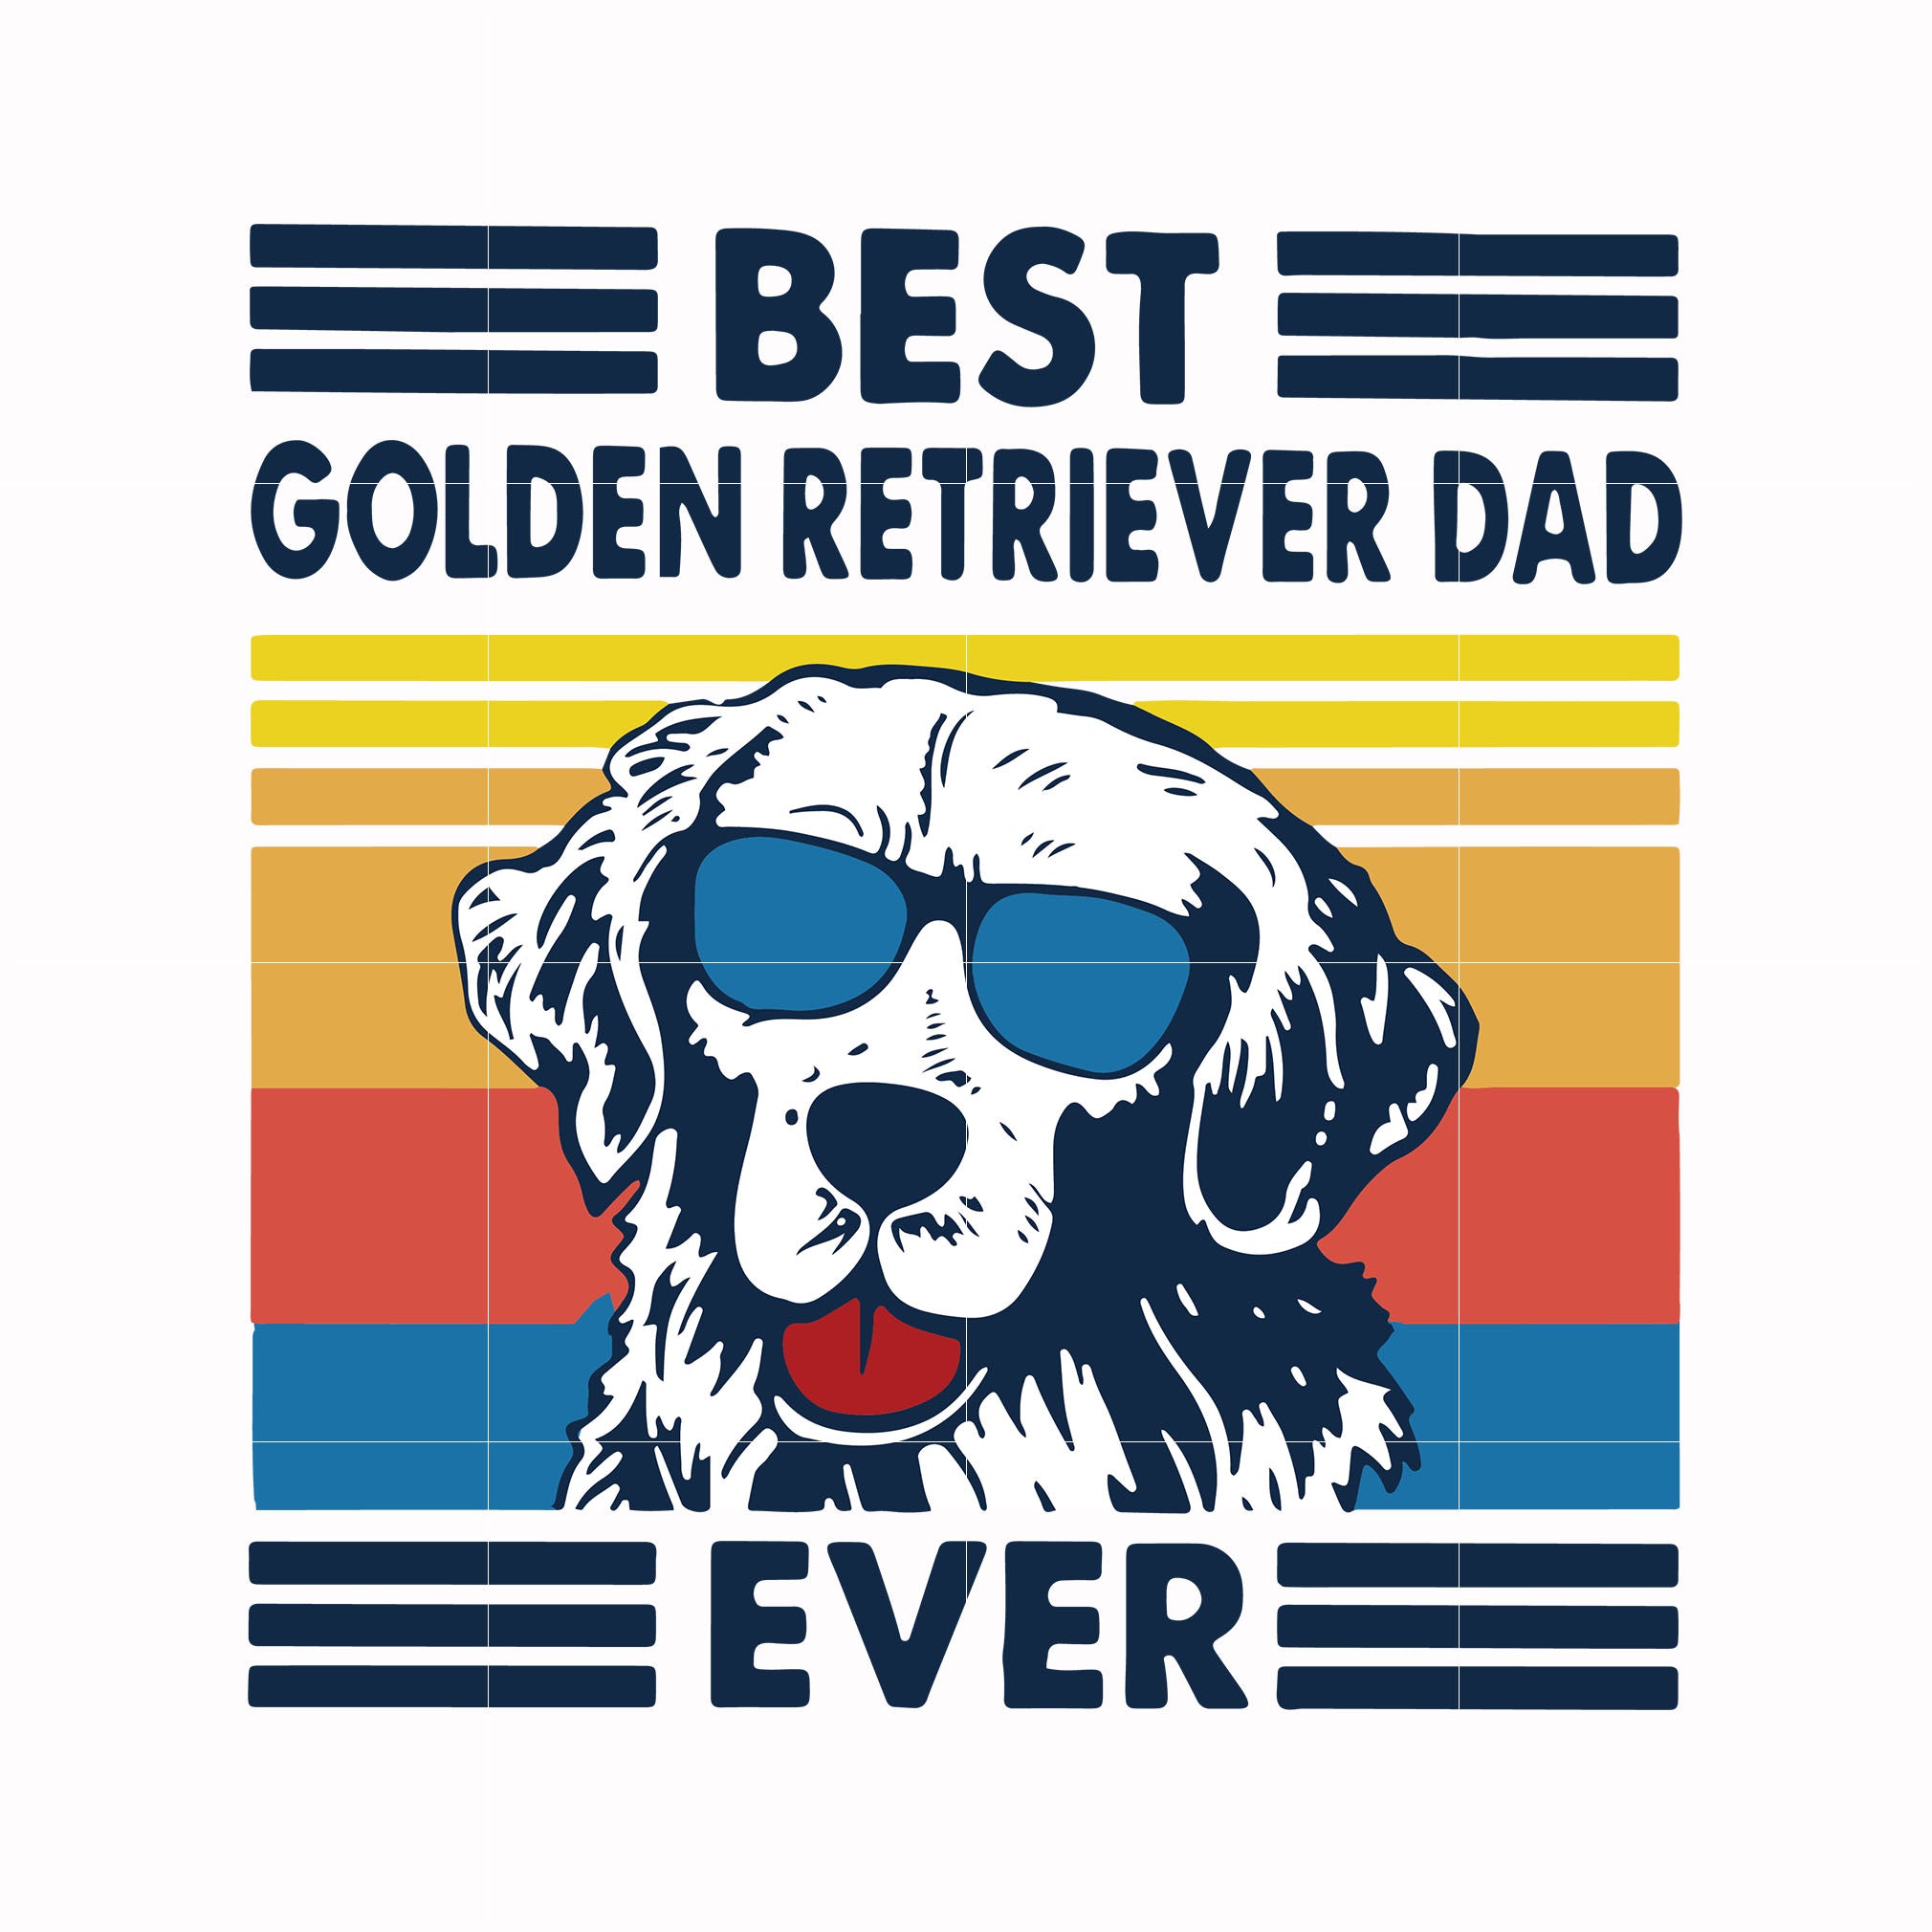 Best golden retriever dad ever svg, png, dxf, eps, digital file FTD30